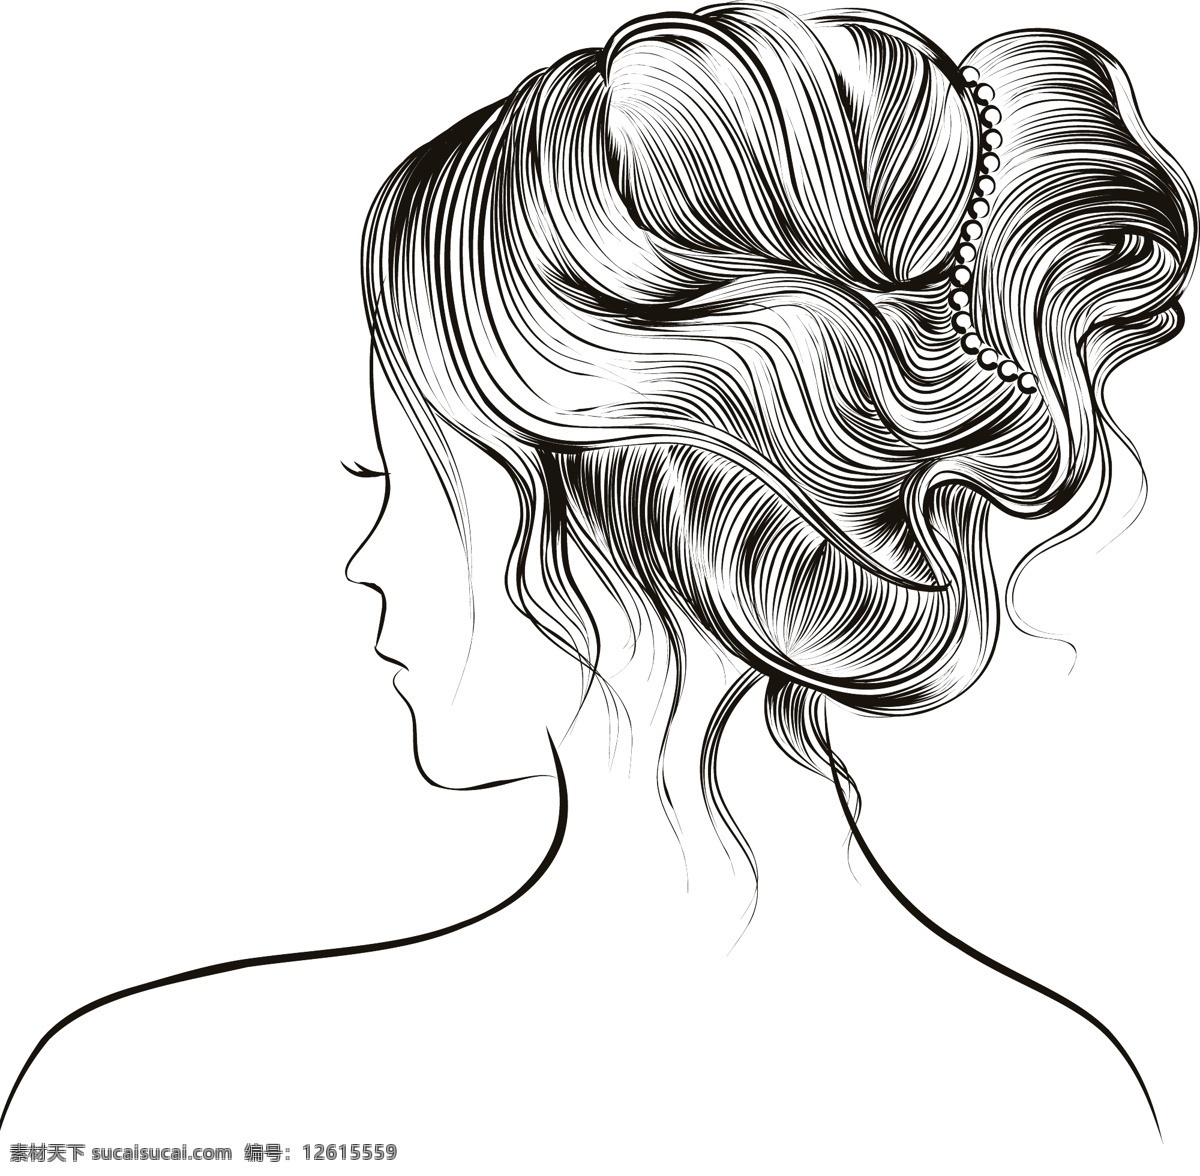 手绘 女性人物 发型 插画 时尚 女性 人物 头发 背影